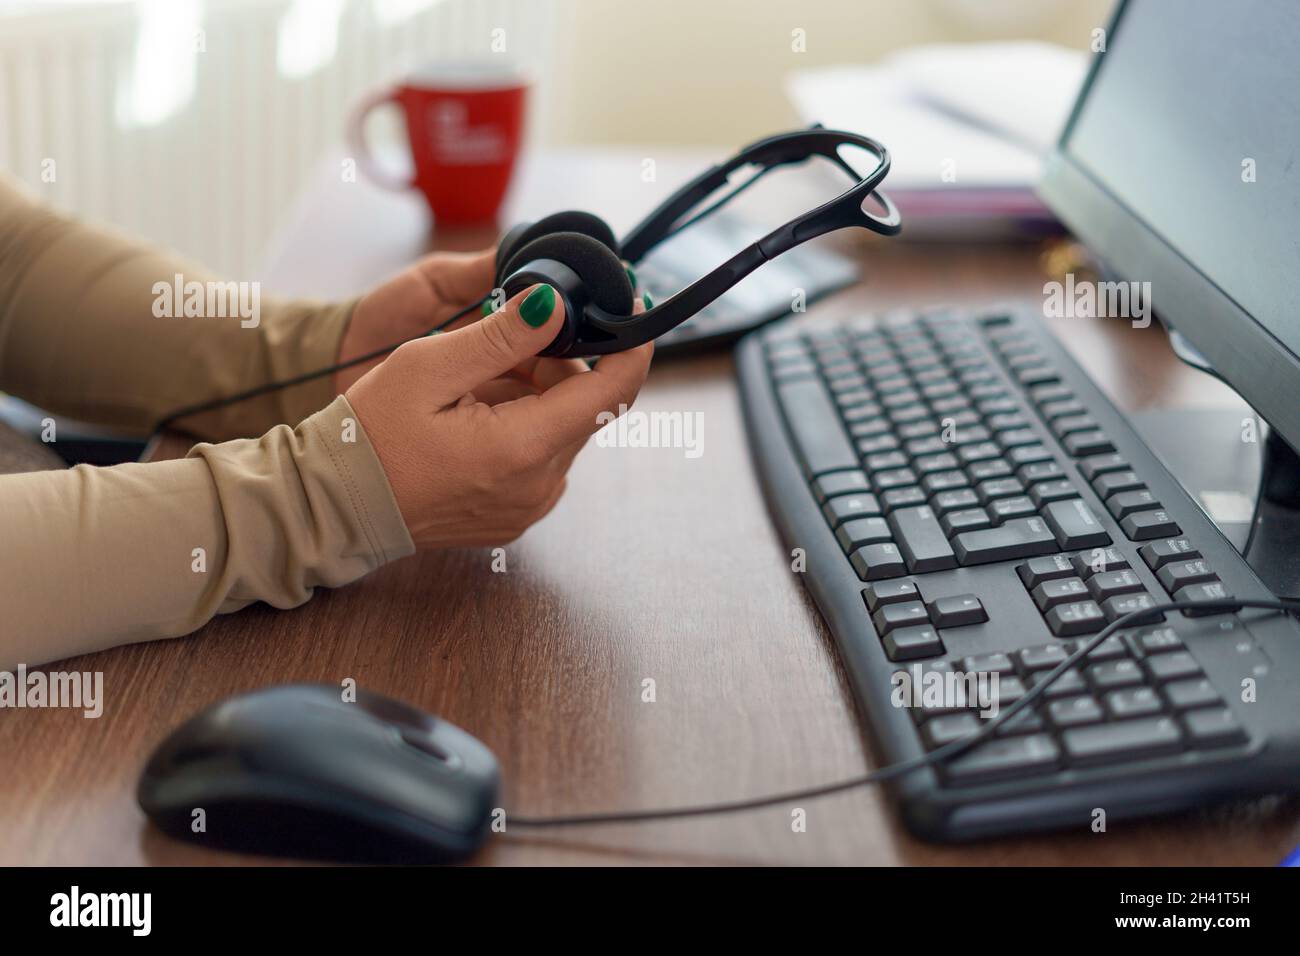 Kaukasische Frau Hände halten Mikrofon-Headset. Call Center, Büro, Remote oder Work from Home Konzept. Stockfoto